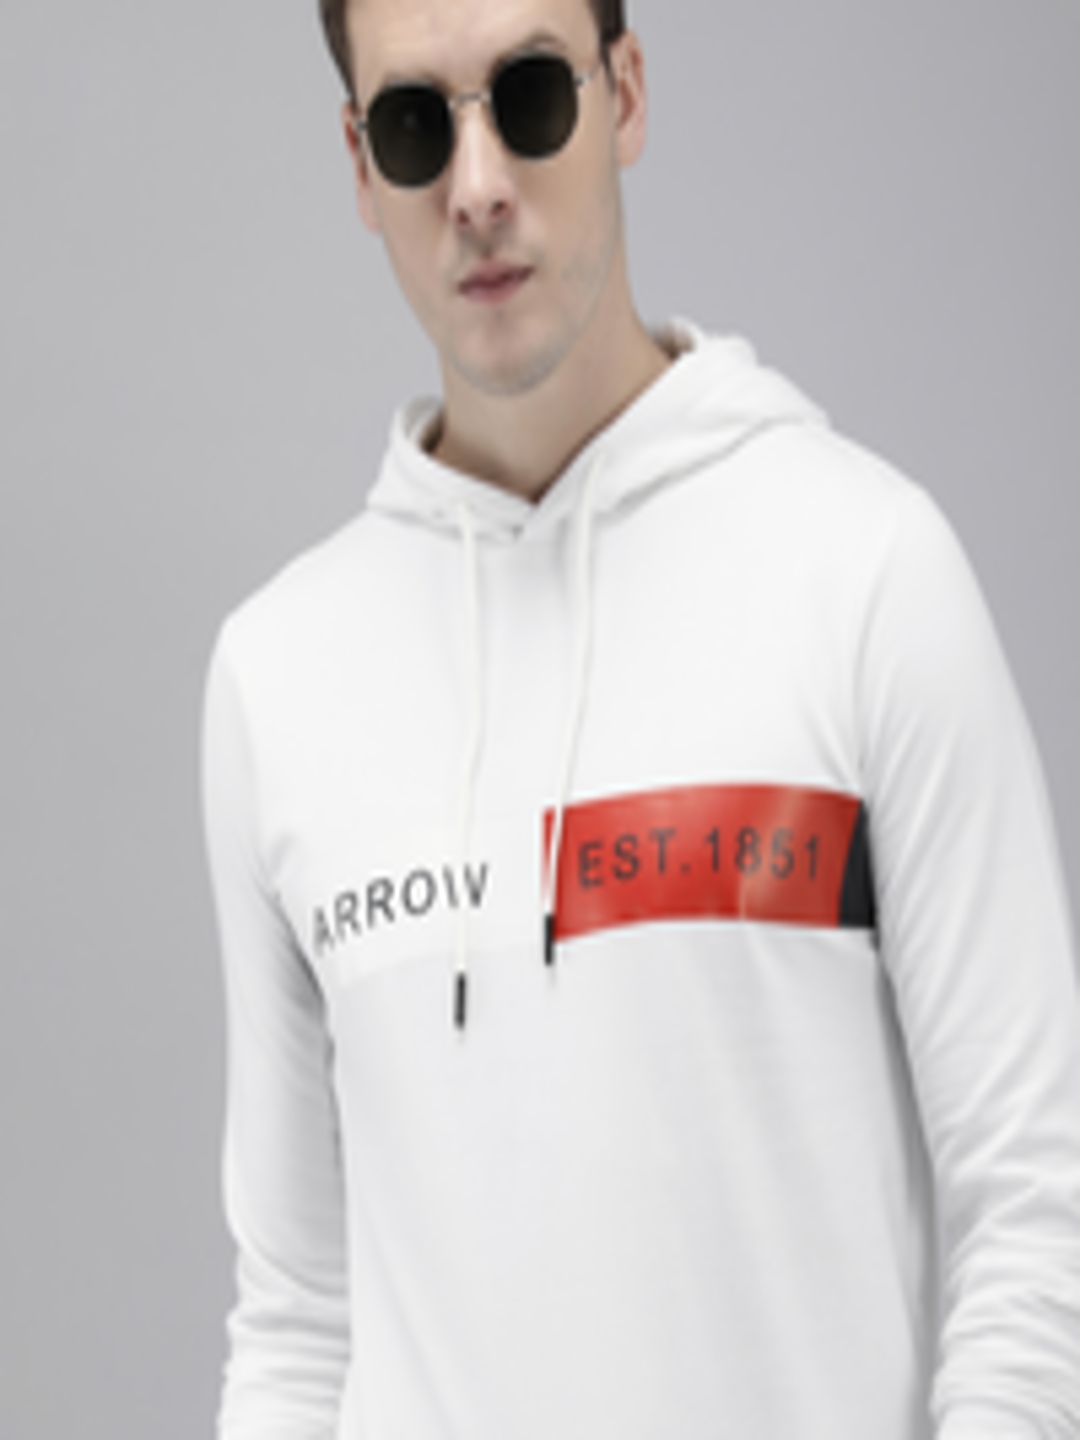 Buy Arrow Long Sleeves Printed Hooded Sweatshirt - Sweatshirts for Men ...